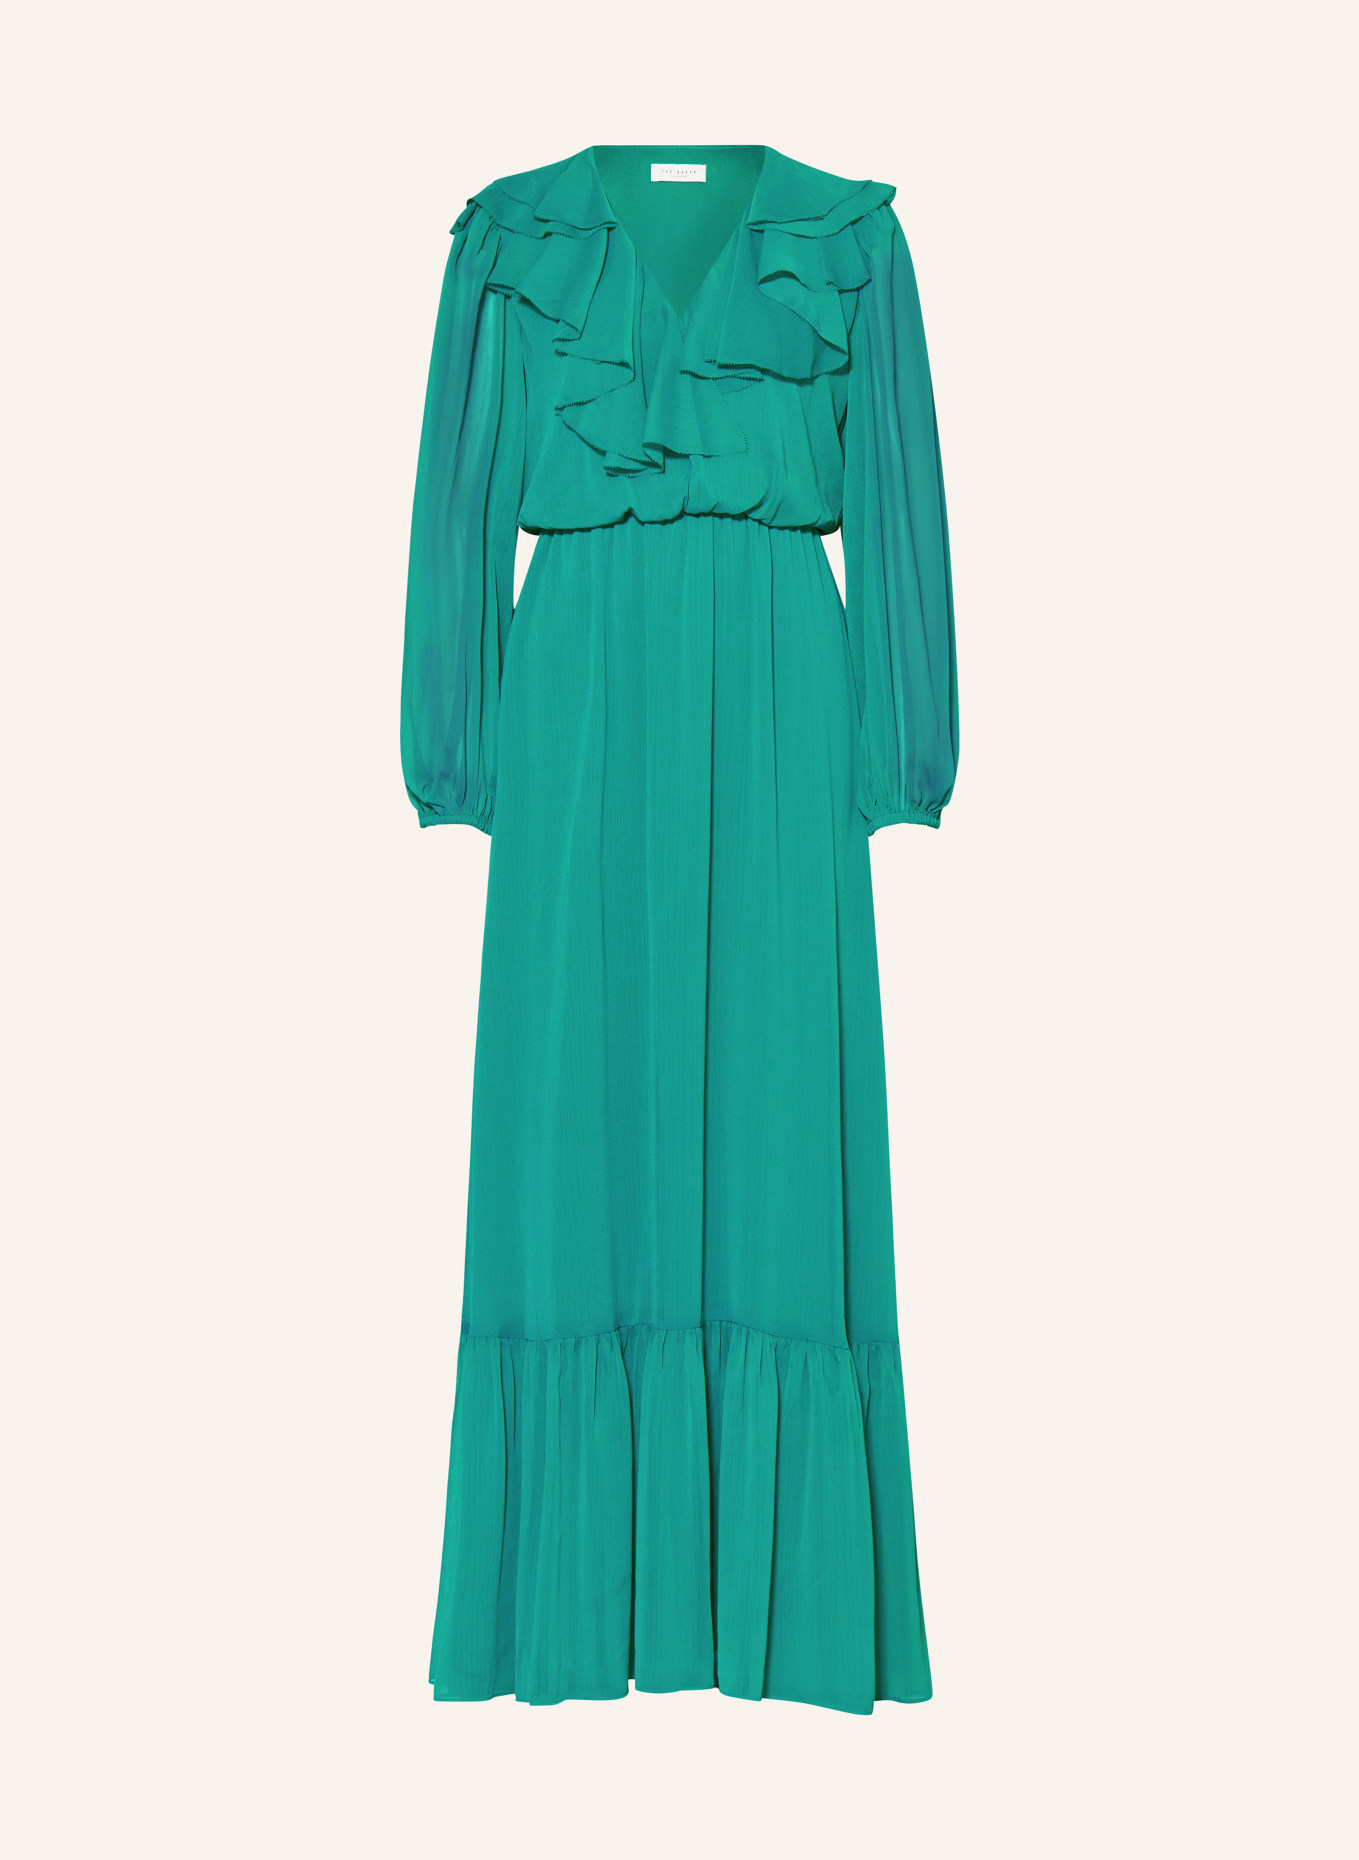 TED BAKER Kleid KEINA mit Volants, Farbe: GRÜN (Bild 1)